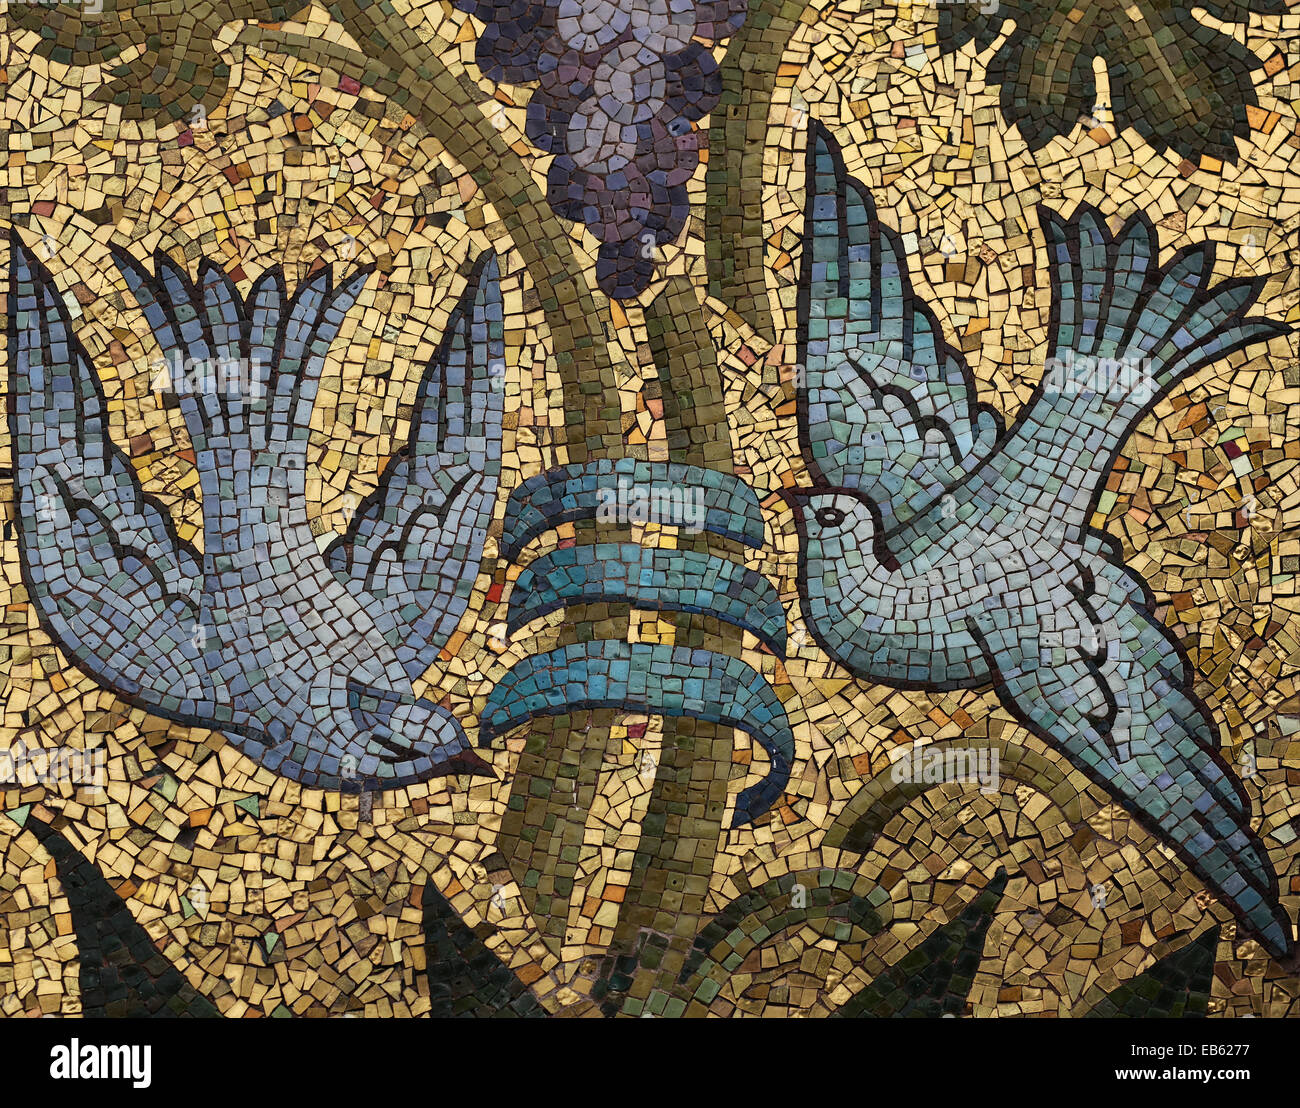 Due piccioni battenti intorno a un vitigno. Mosaico di vetro colorato smalts sulla terra dorata. La Scuola Mosaicisti del Friuli, Spilimbergo, Italia. Foto Stock